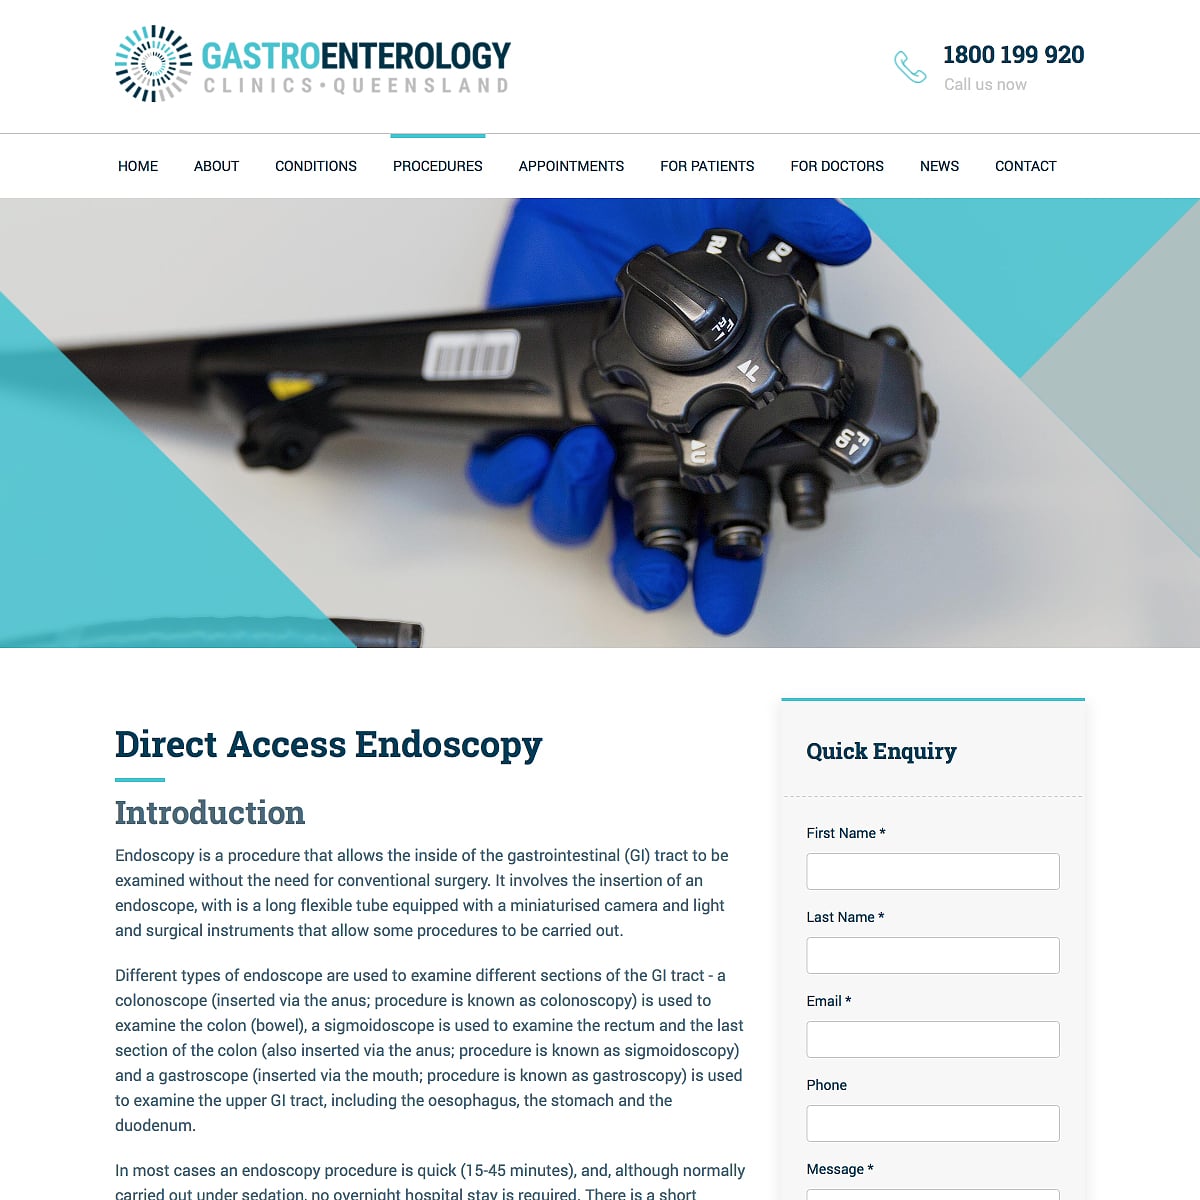 Gastroenterology Clinics Queensland - Direct Access Endoscopy